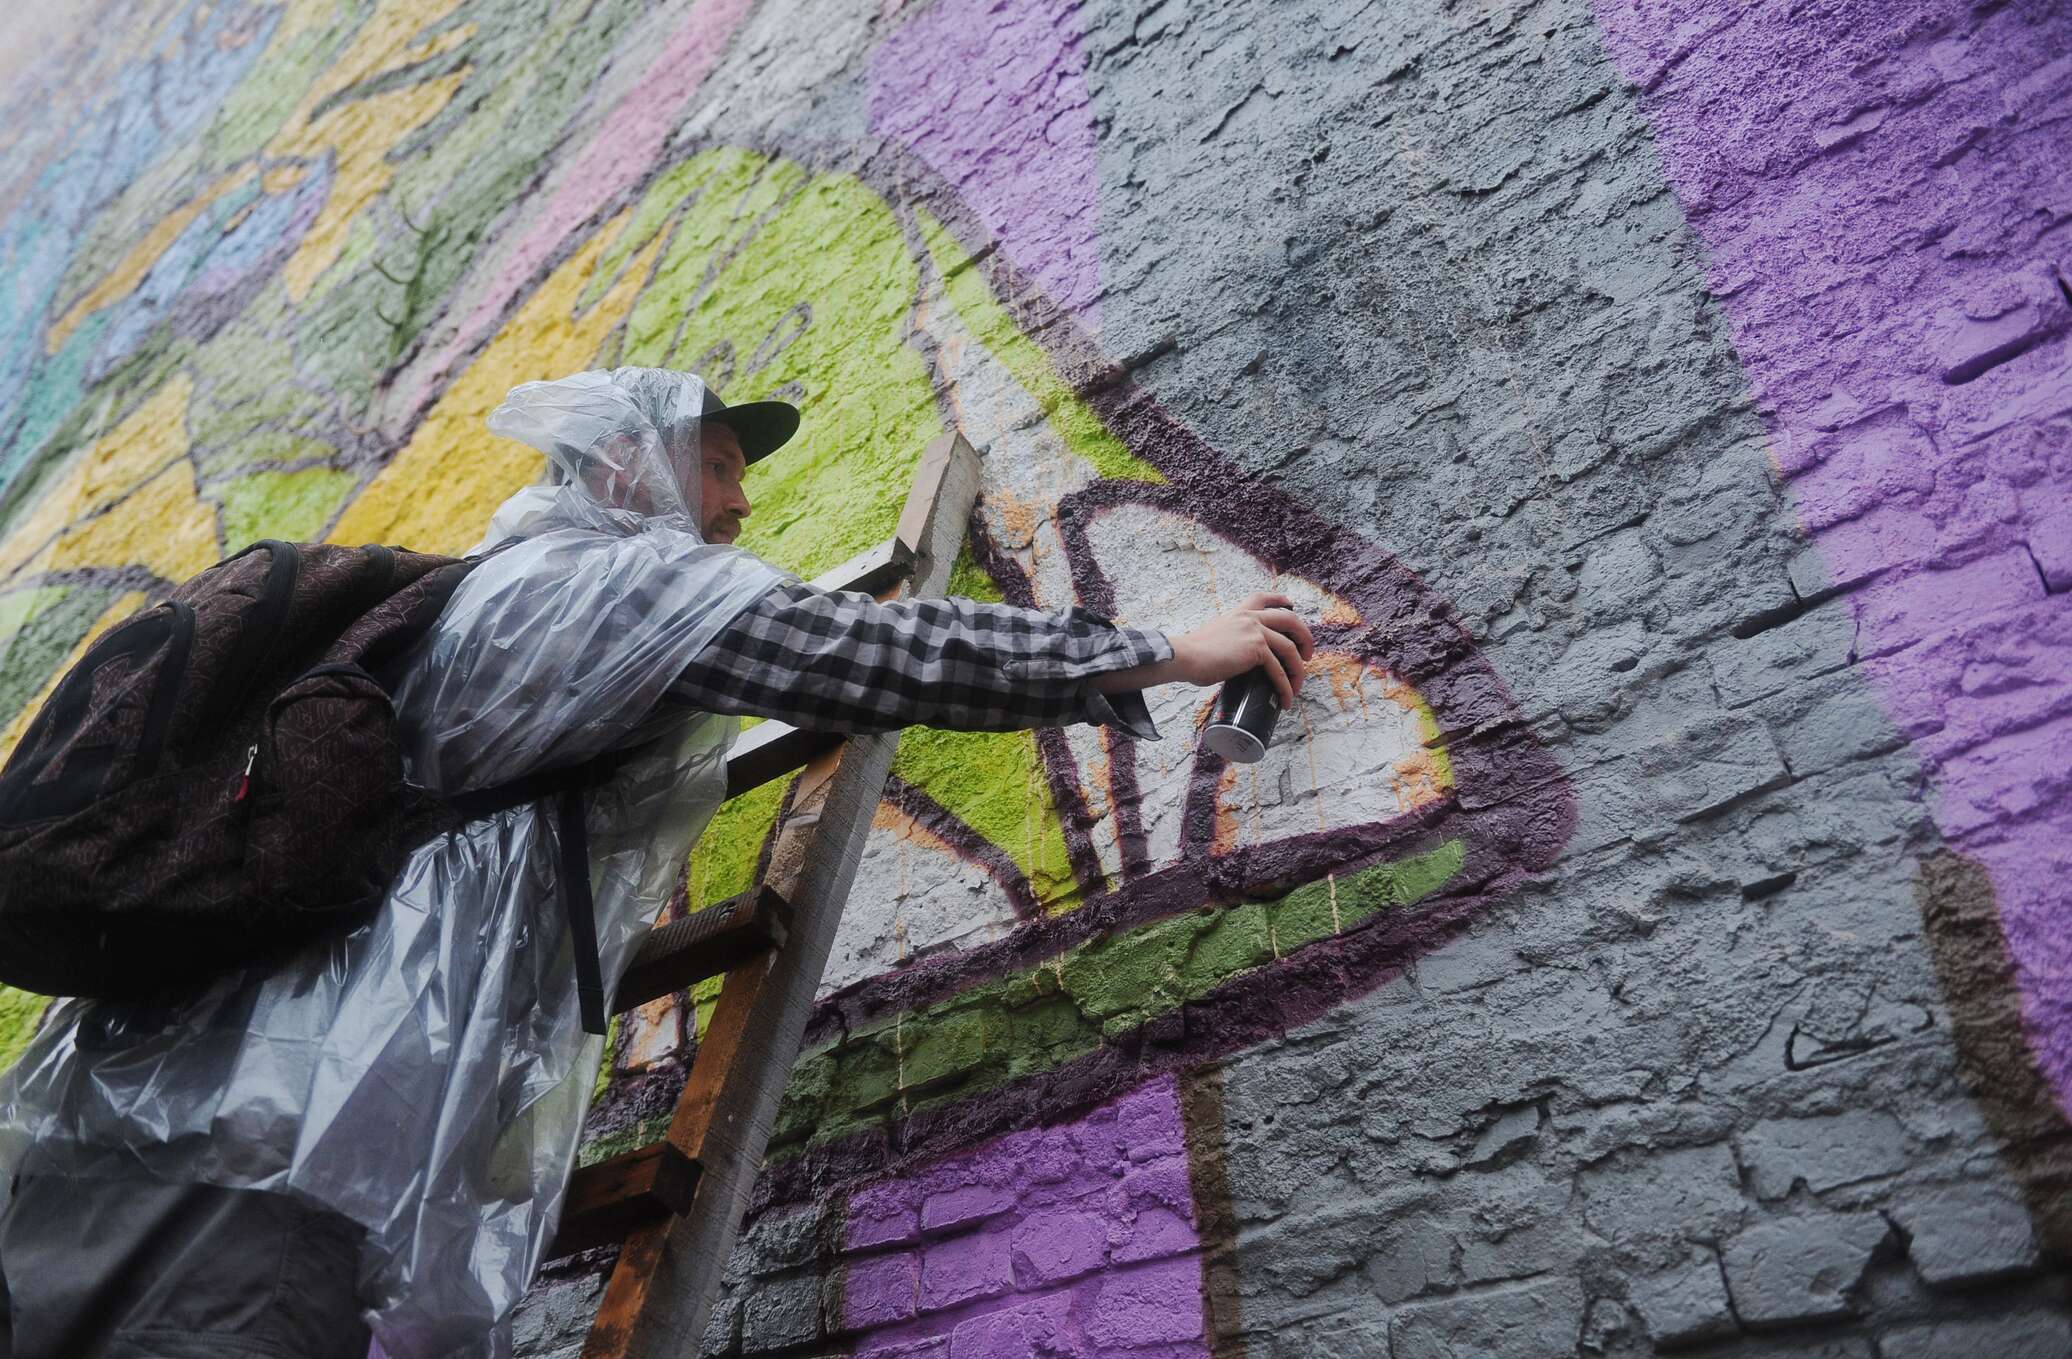 Разрисованный художником. Лучший город земли фестиваль граффити. Художник который раскрасил серый мир. Британский художник разукрасил белый дом. Doxa граффити.